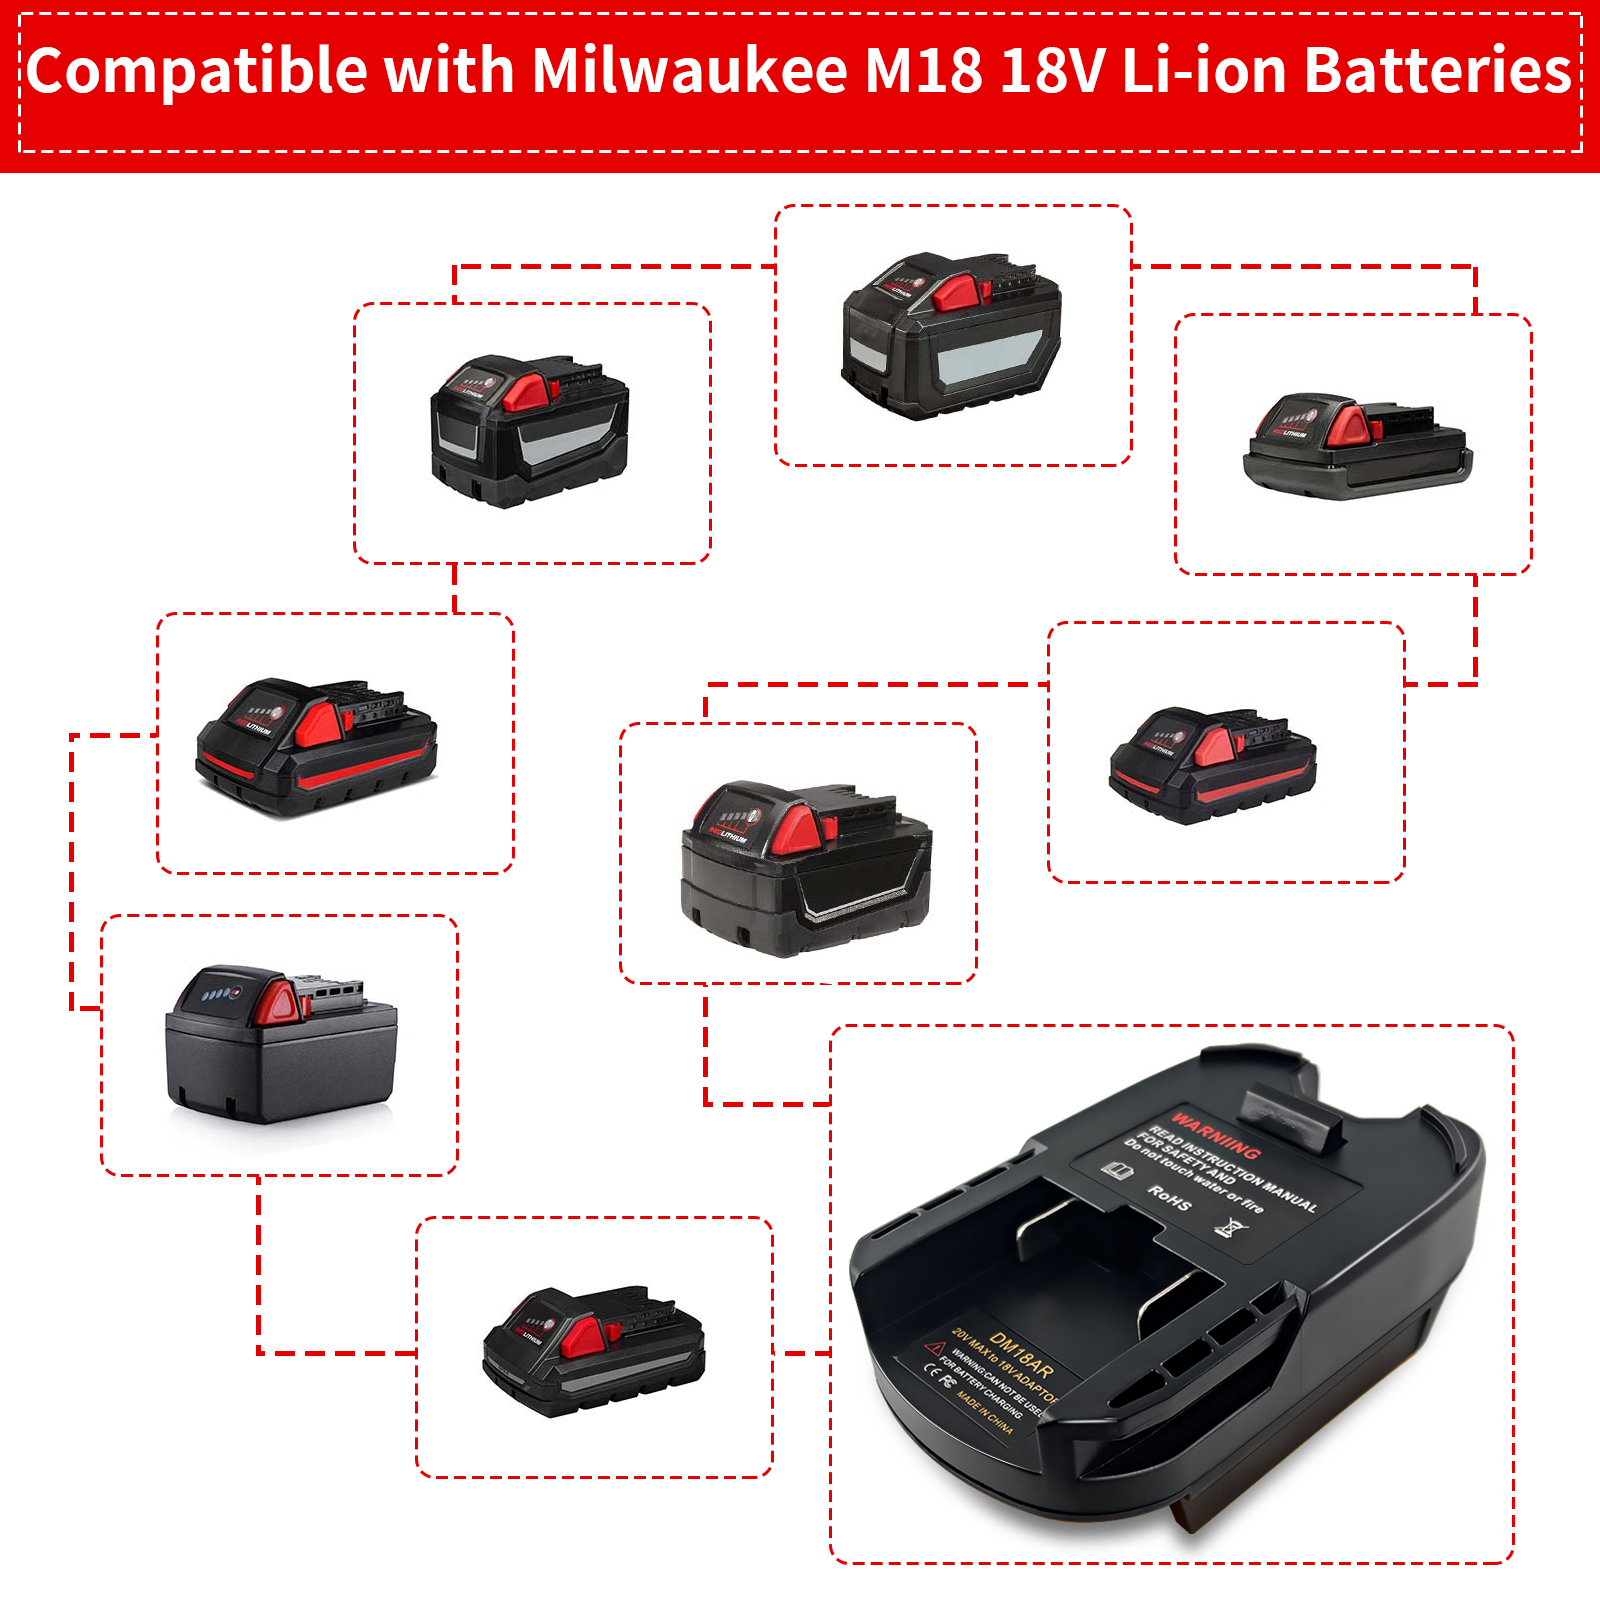 Zasilacz konwertuje akumulatory Milwaukee 18 V M18 i Dewalt 20 V na narzędzia akumulatorowe Ridgid AEG